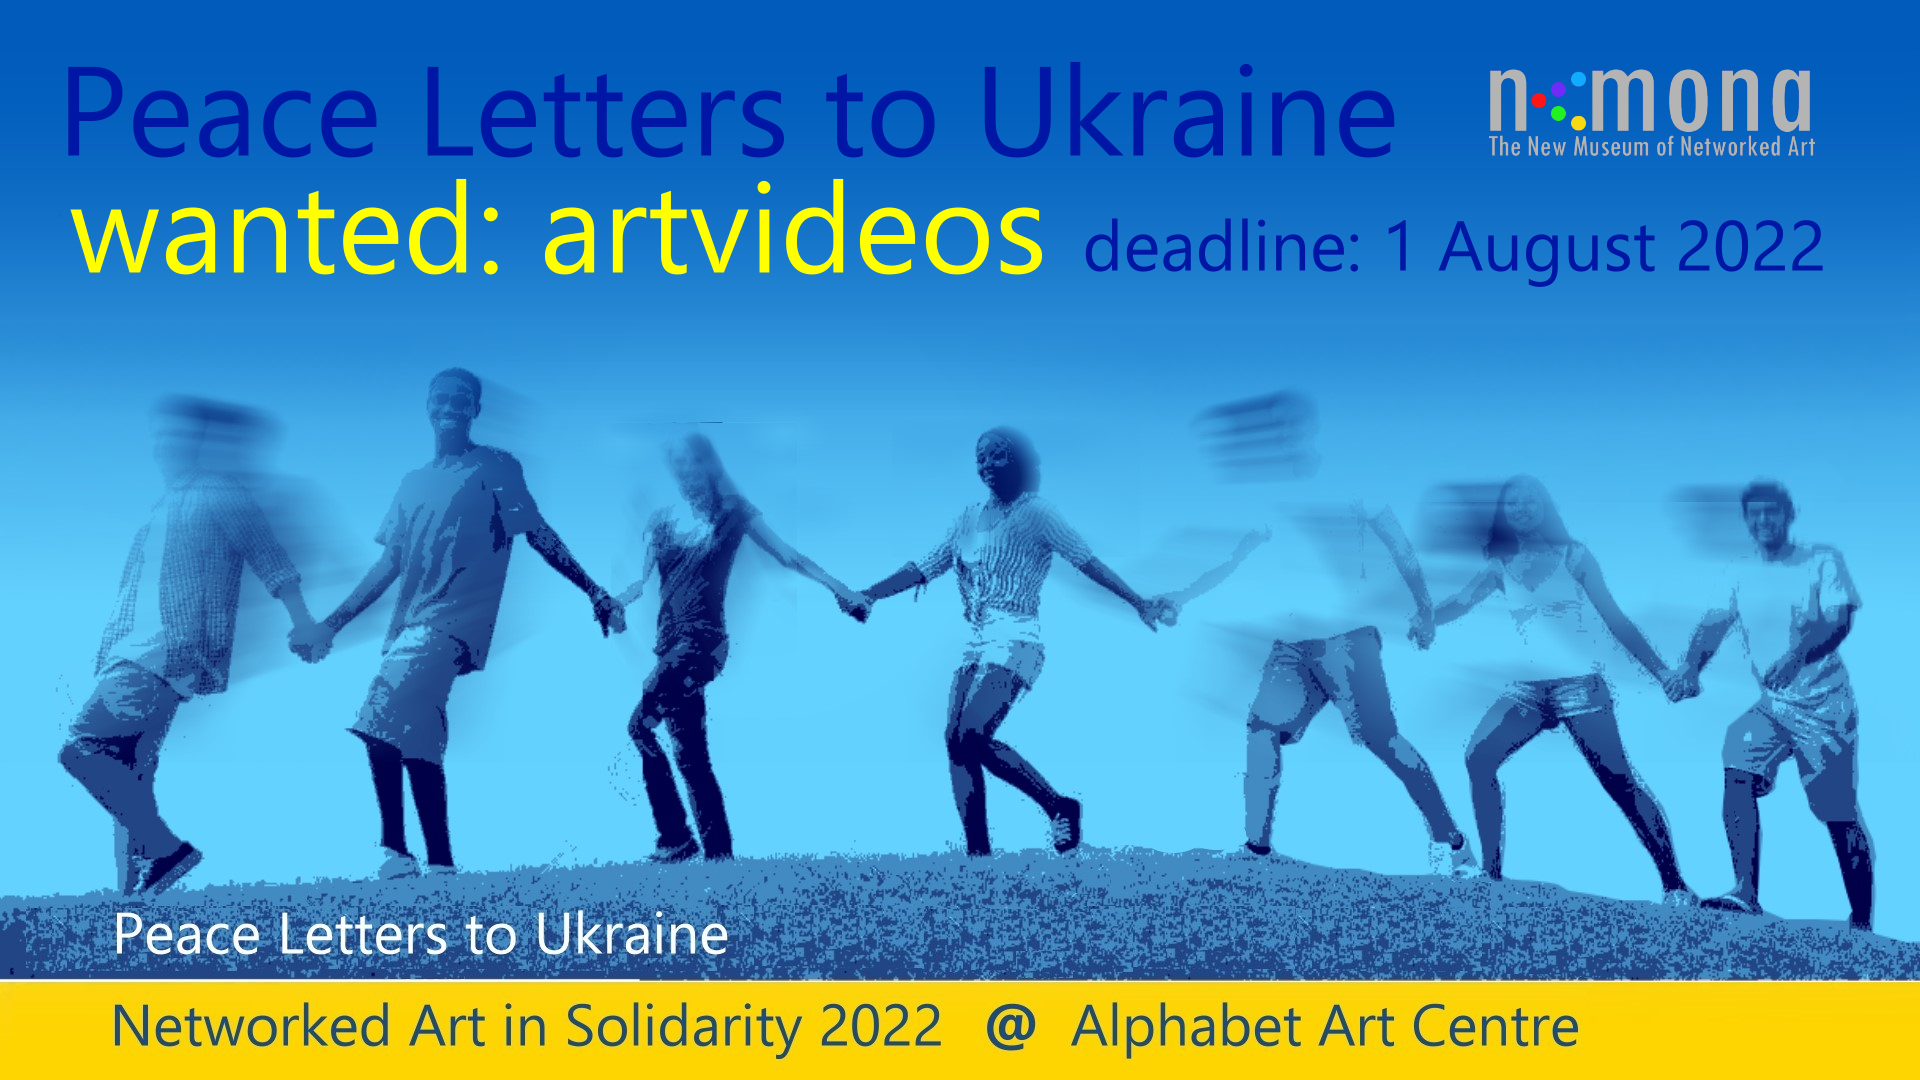 In solidarity with UKRAINE